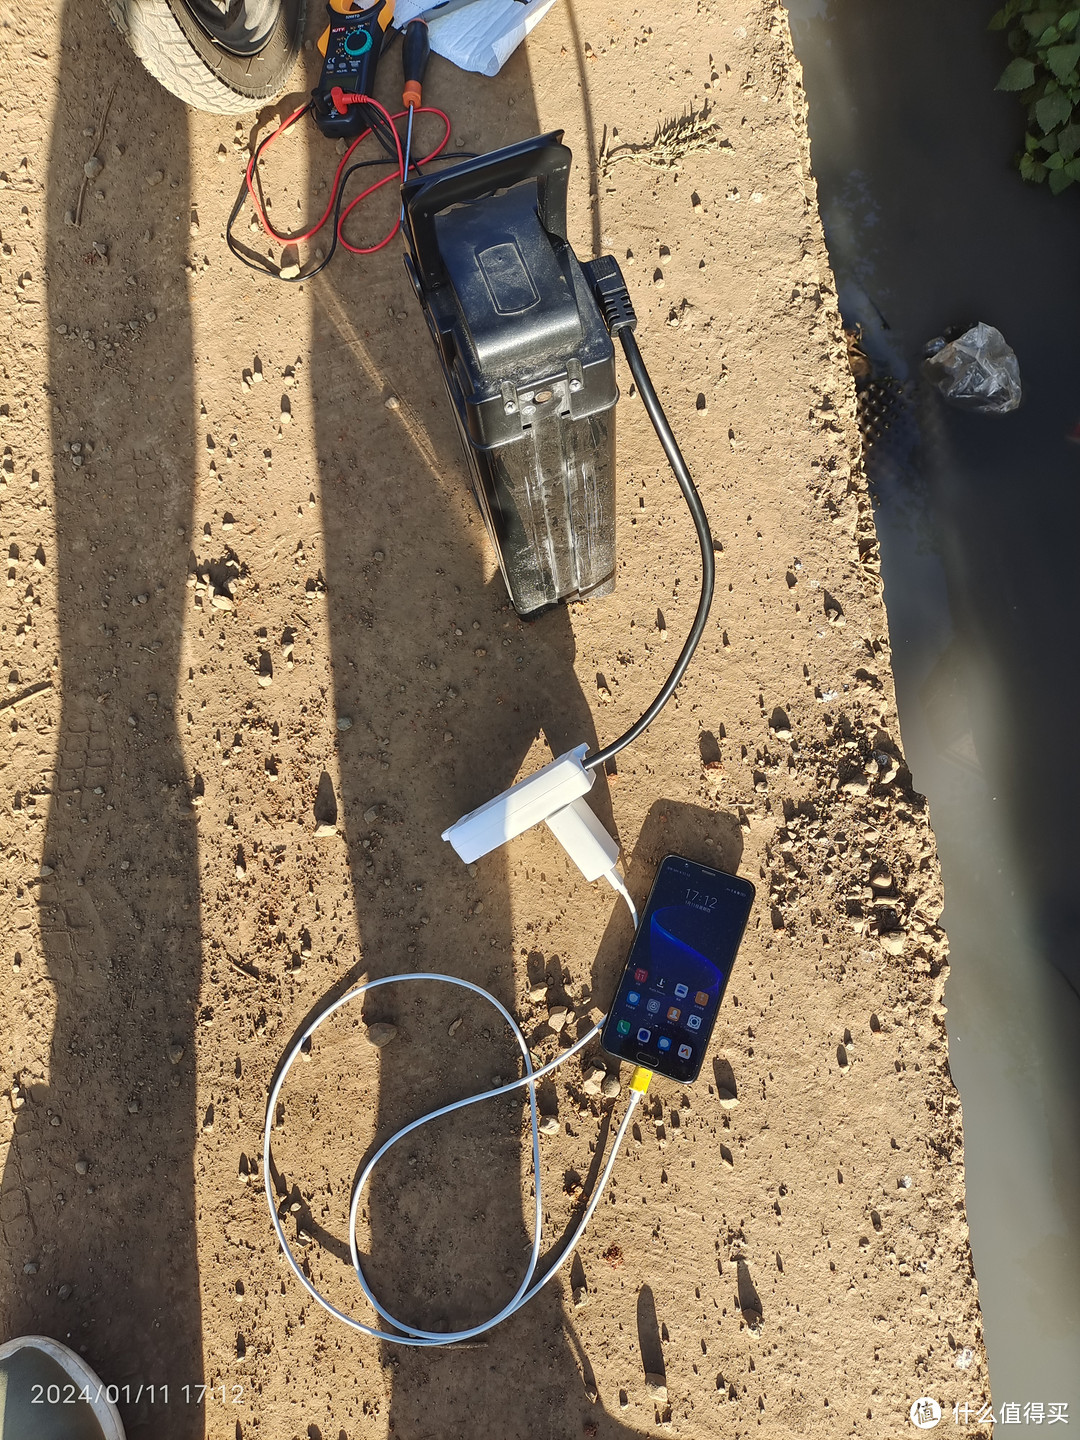 电瓶车电池可以直接给手机充电吗？